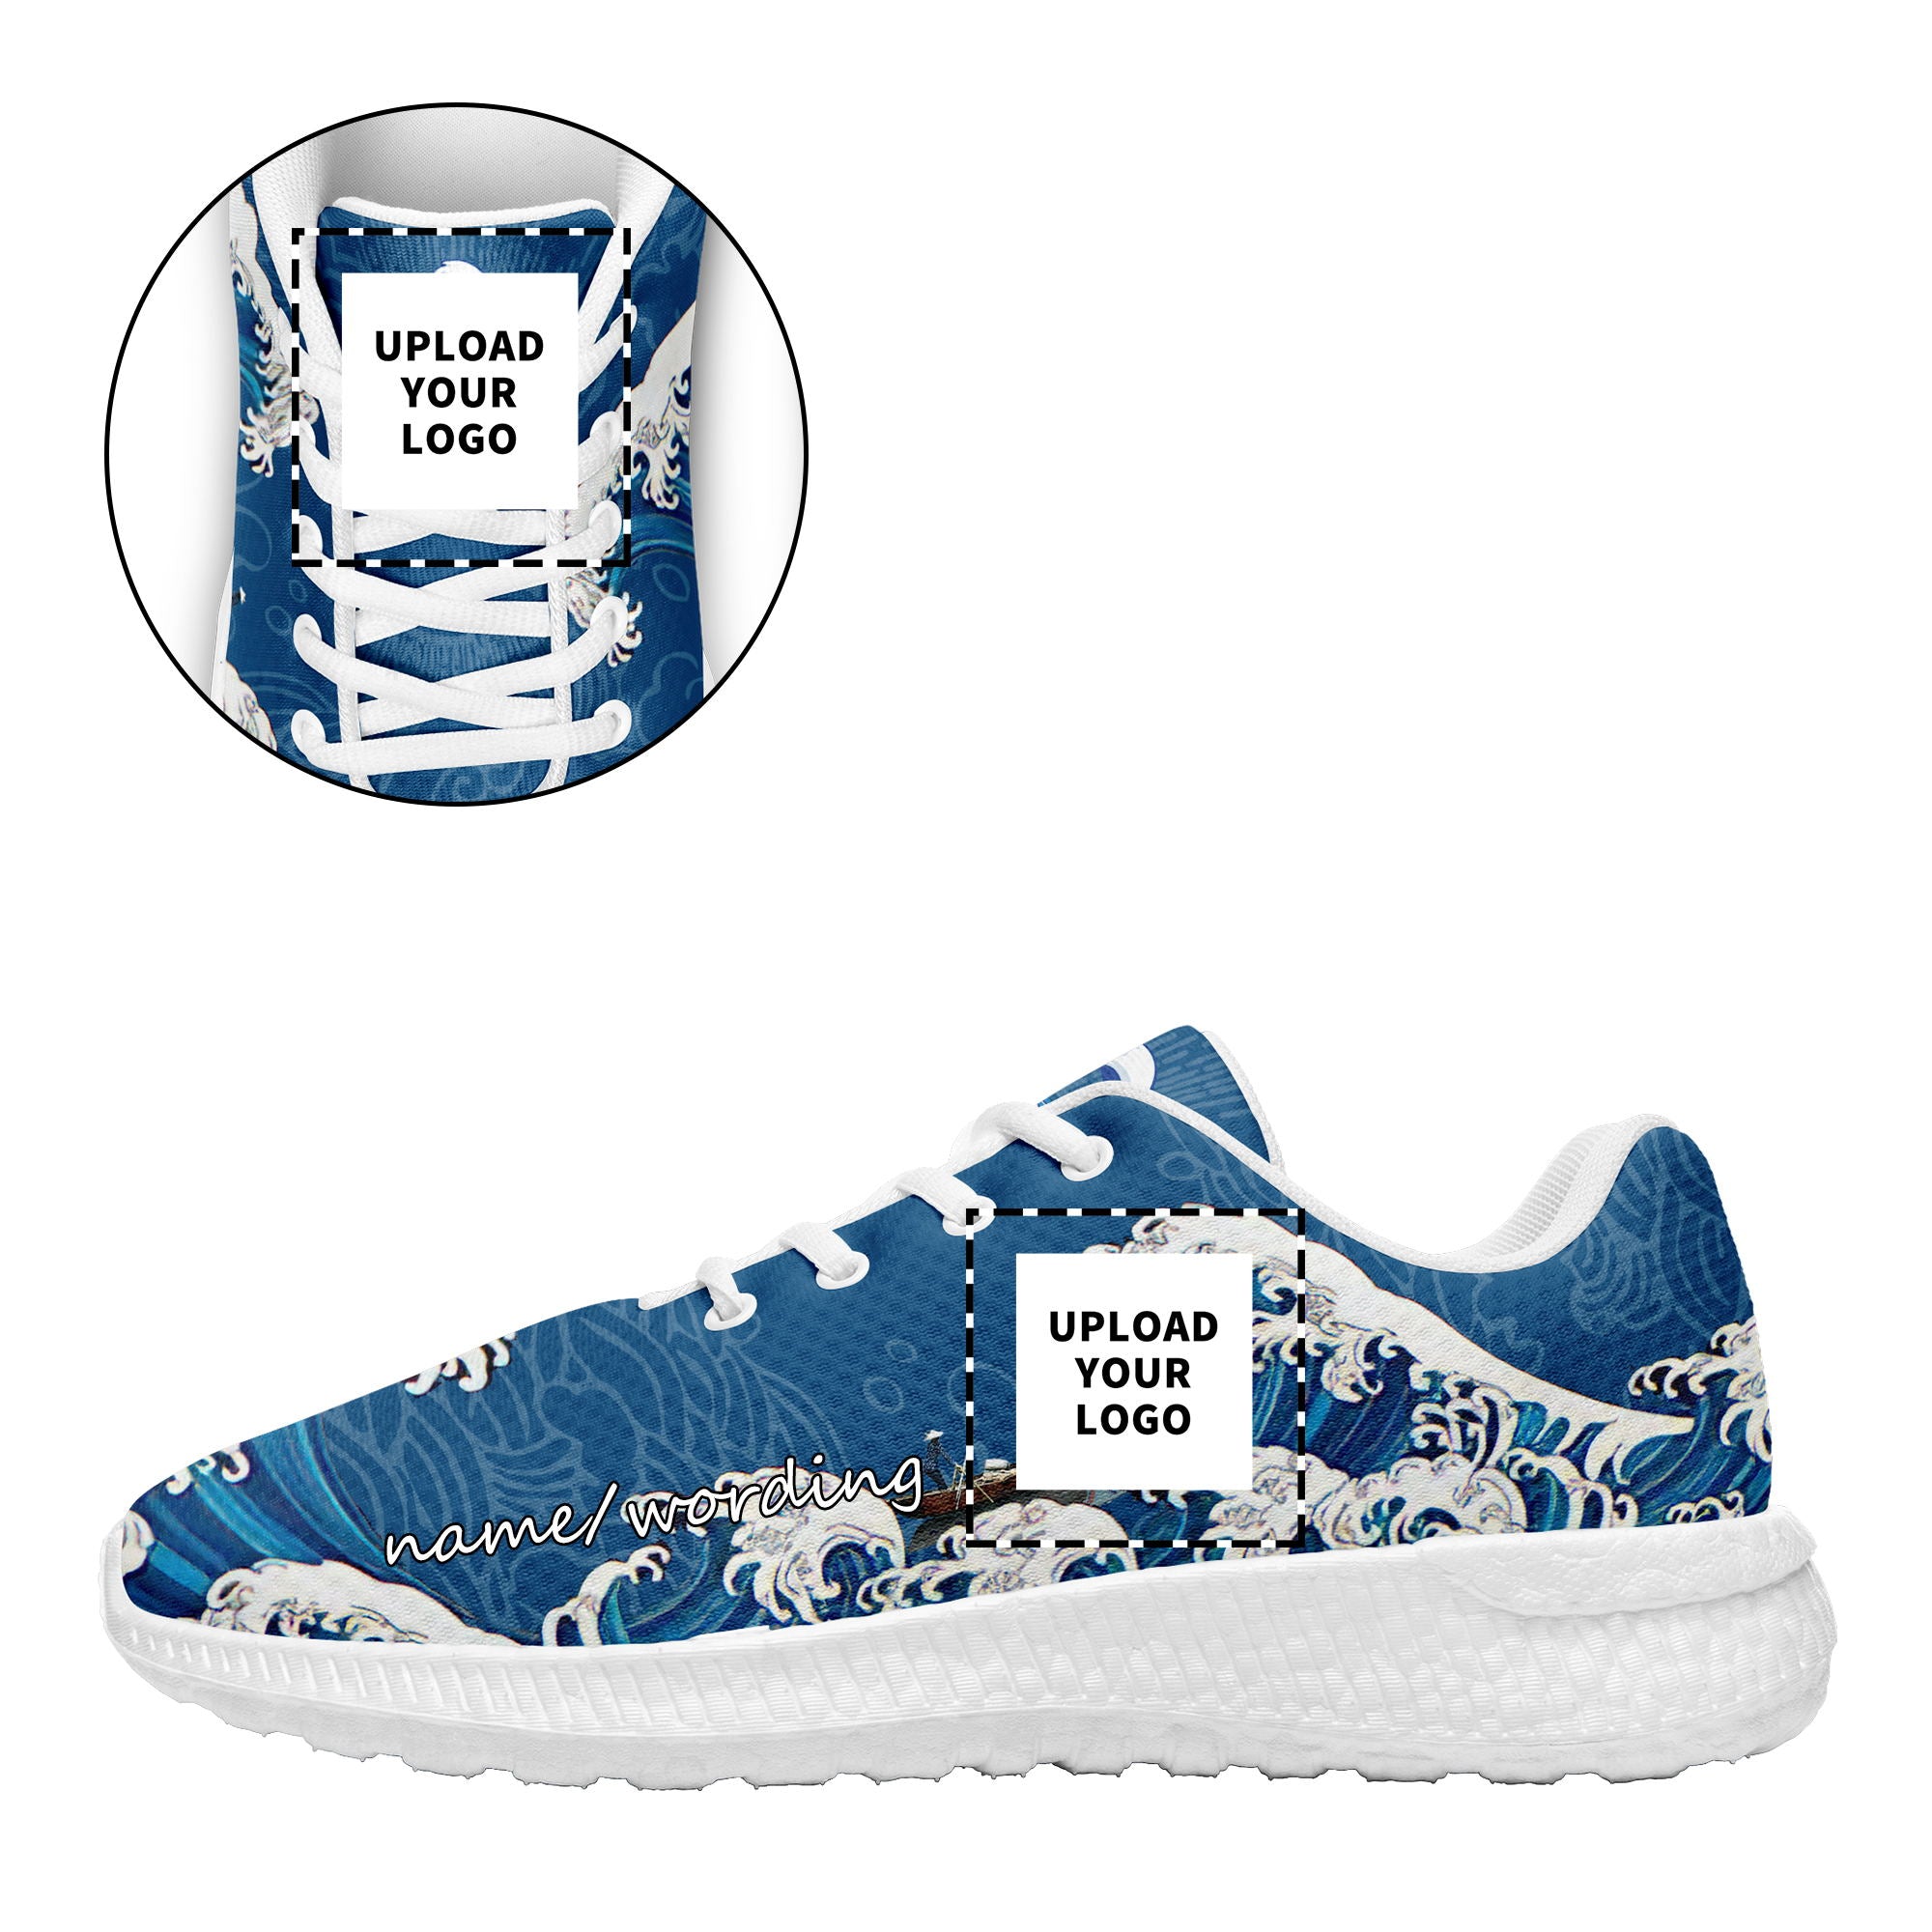 柔性定制个性化打印设计跑鞋时尚中国莆田妈祖特色主题运动鞋蓝色BLD2 定制logo